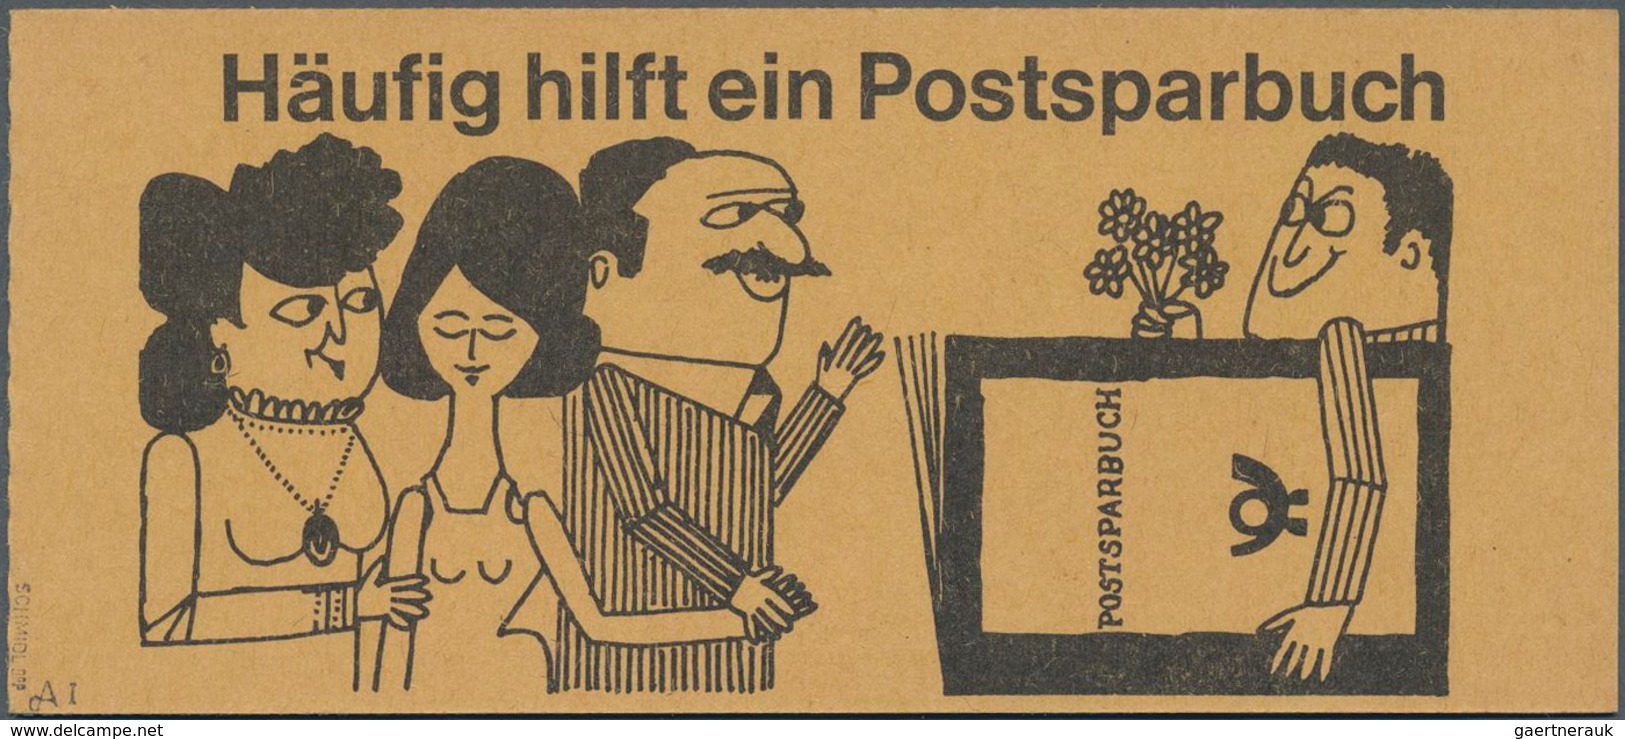 Berlin - Markenheftchen: 1962, Markenheftchen "Dürer" Mit Reklame "Postsparbuch", Tadellos Postfrisc - Markenheftchen